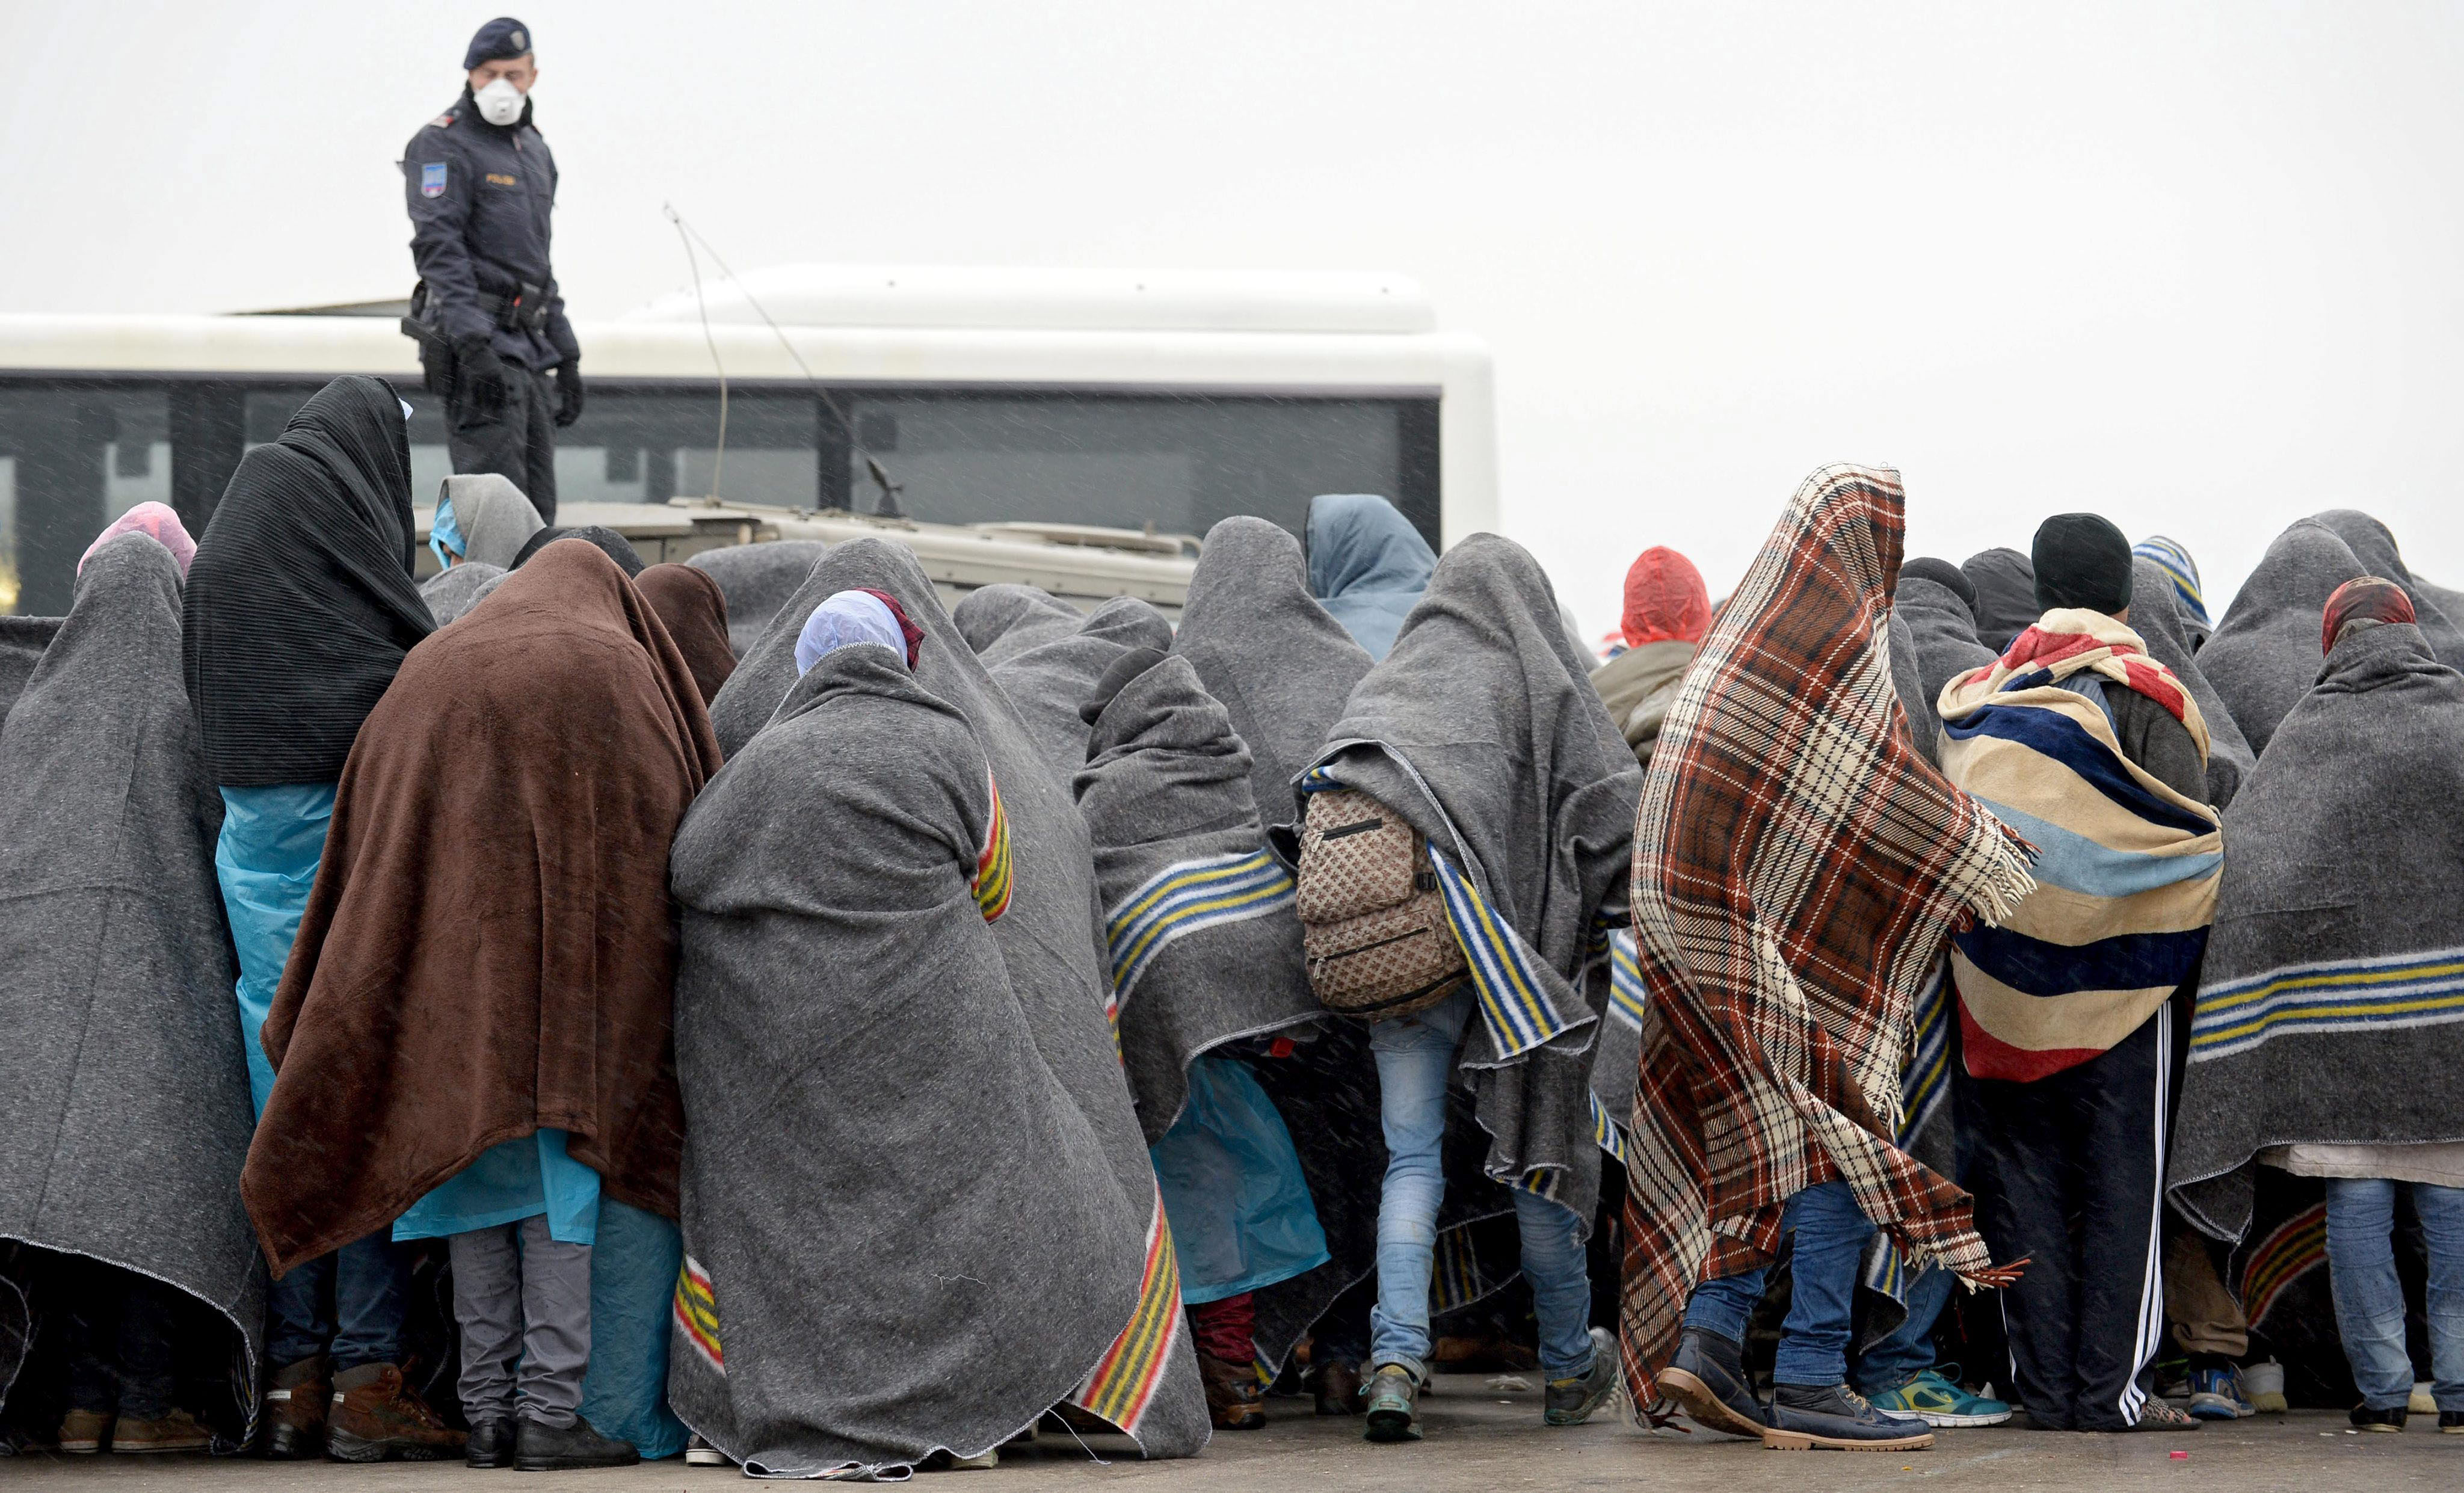 Refugiados esperan bajo la lluvia en un aparcamiento para ser trasladados en la ciudad austriaca de Nickelsdorf, en la frontera con Hungría.